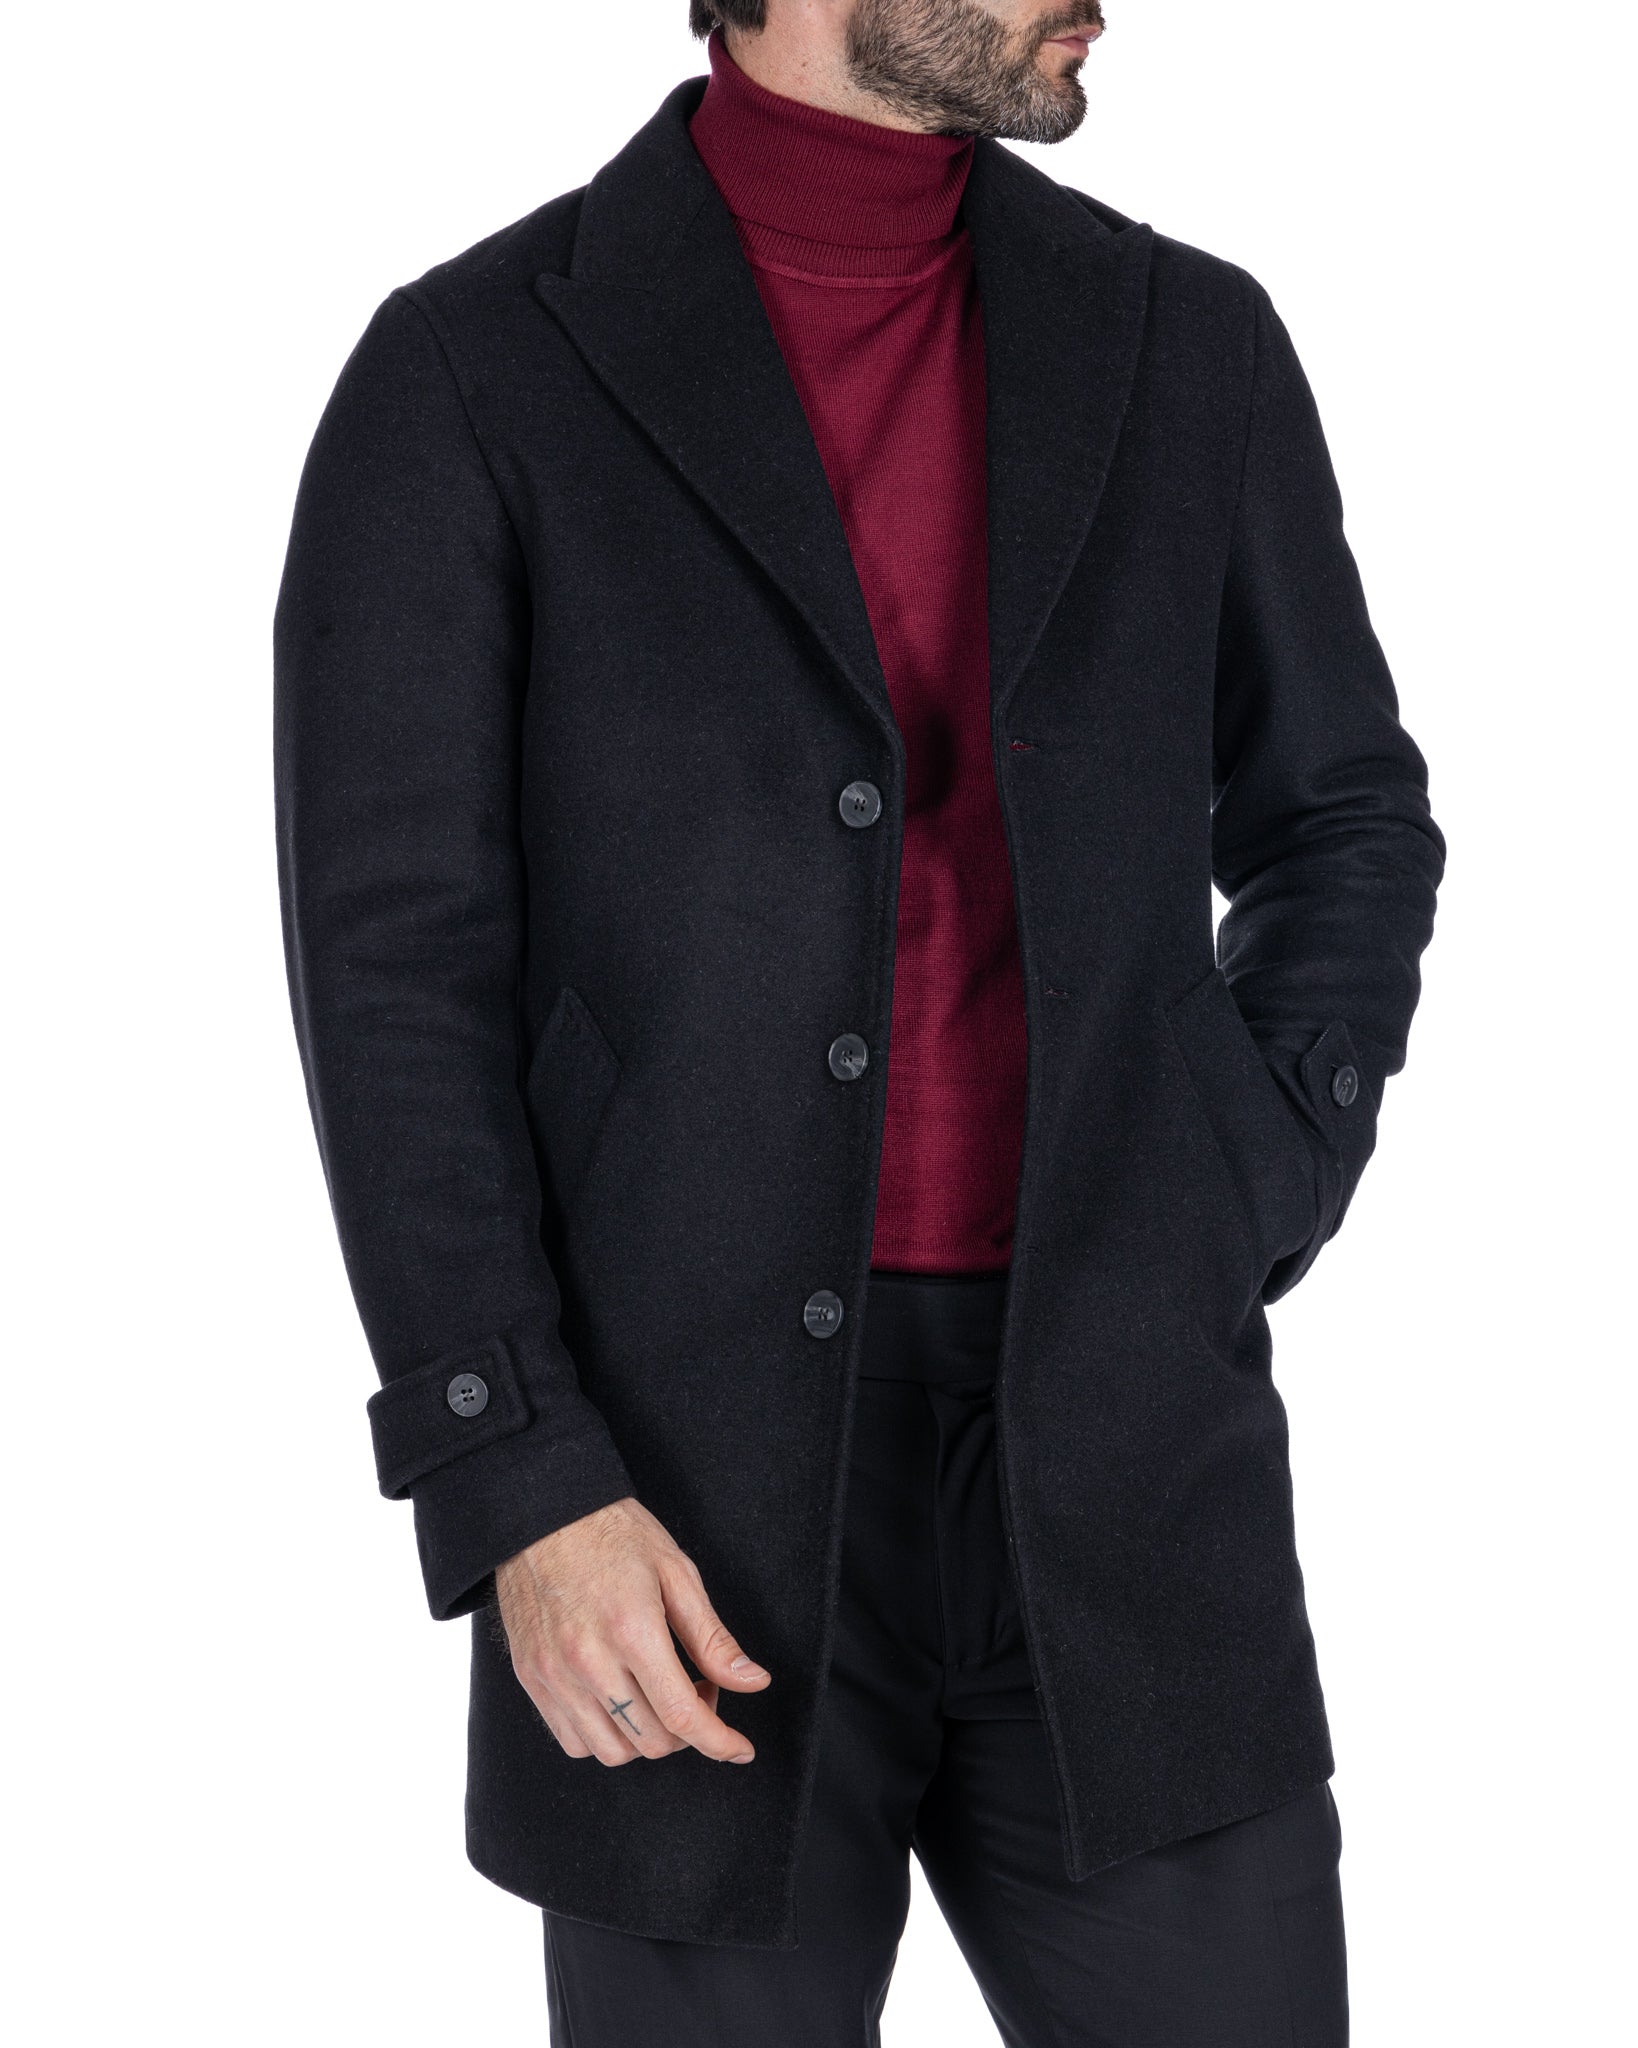 Philippe - cappotto monopetto nero